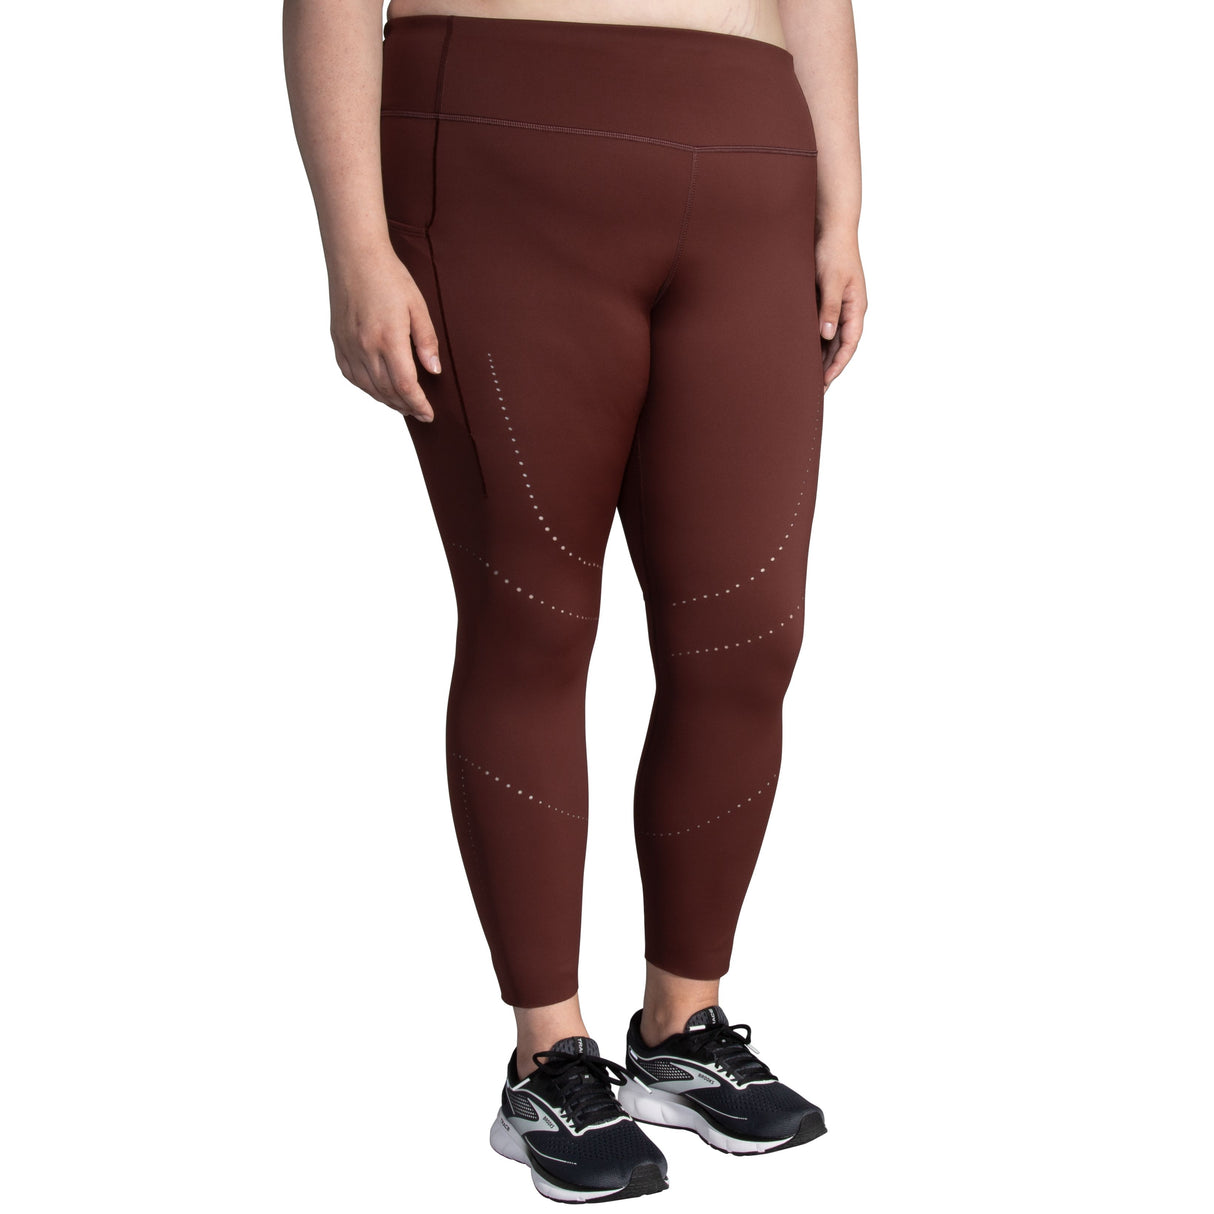 Brooks Method 7/8 Tight running leggings for women – Soccer Sport Fitness